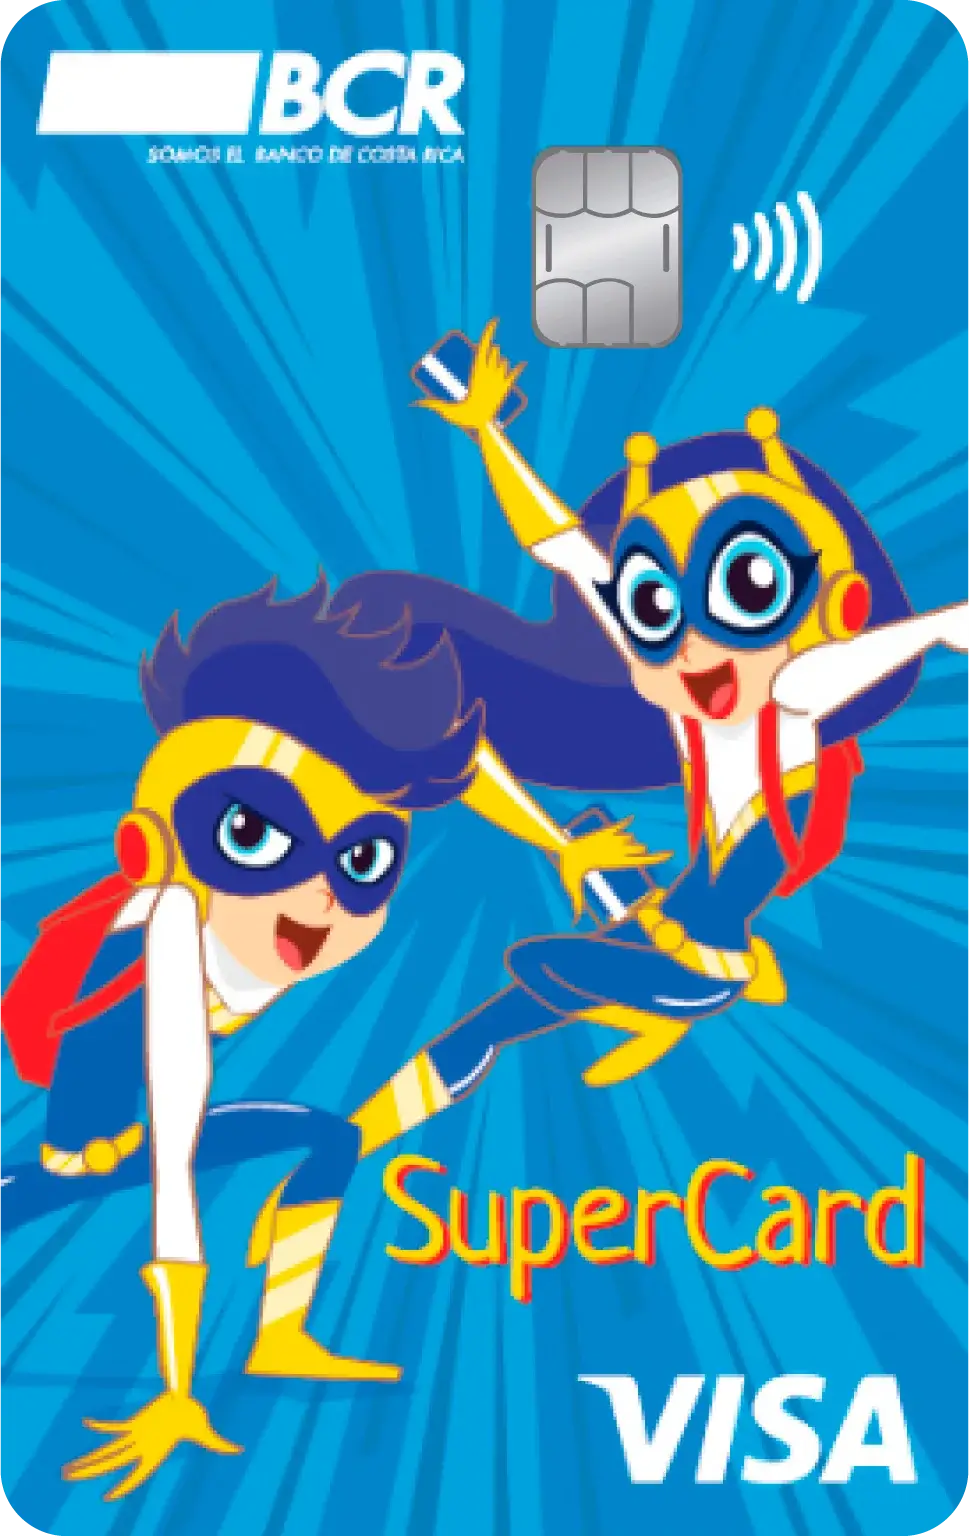 Tarjeta de Débito BCR Visa Supercard